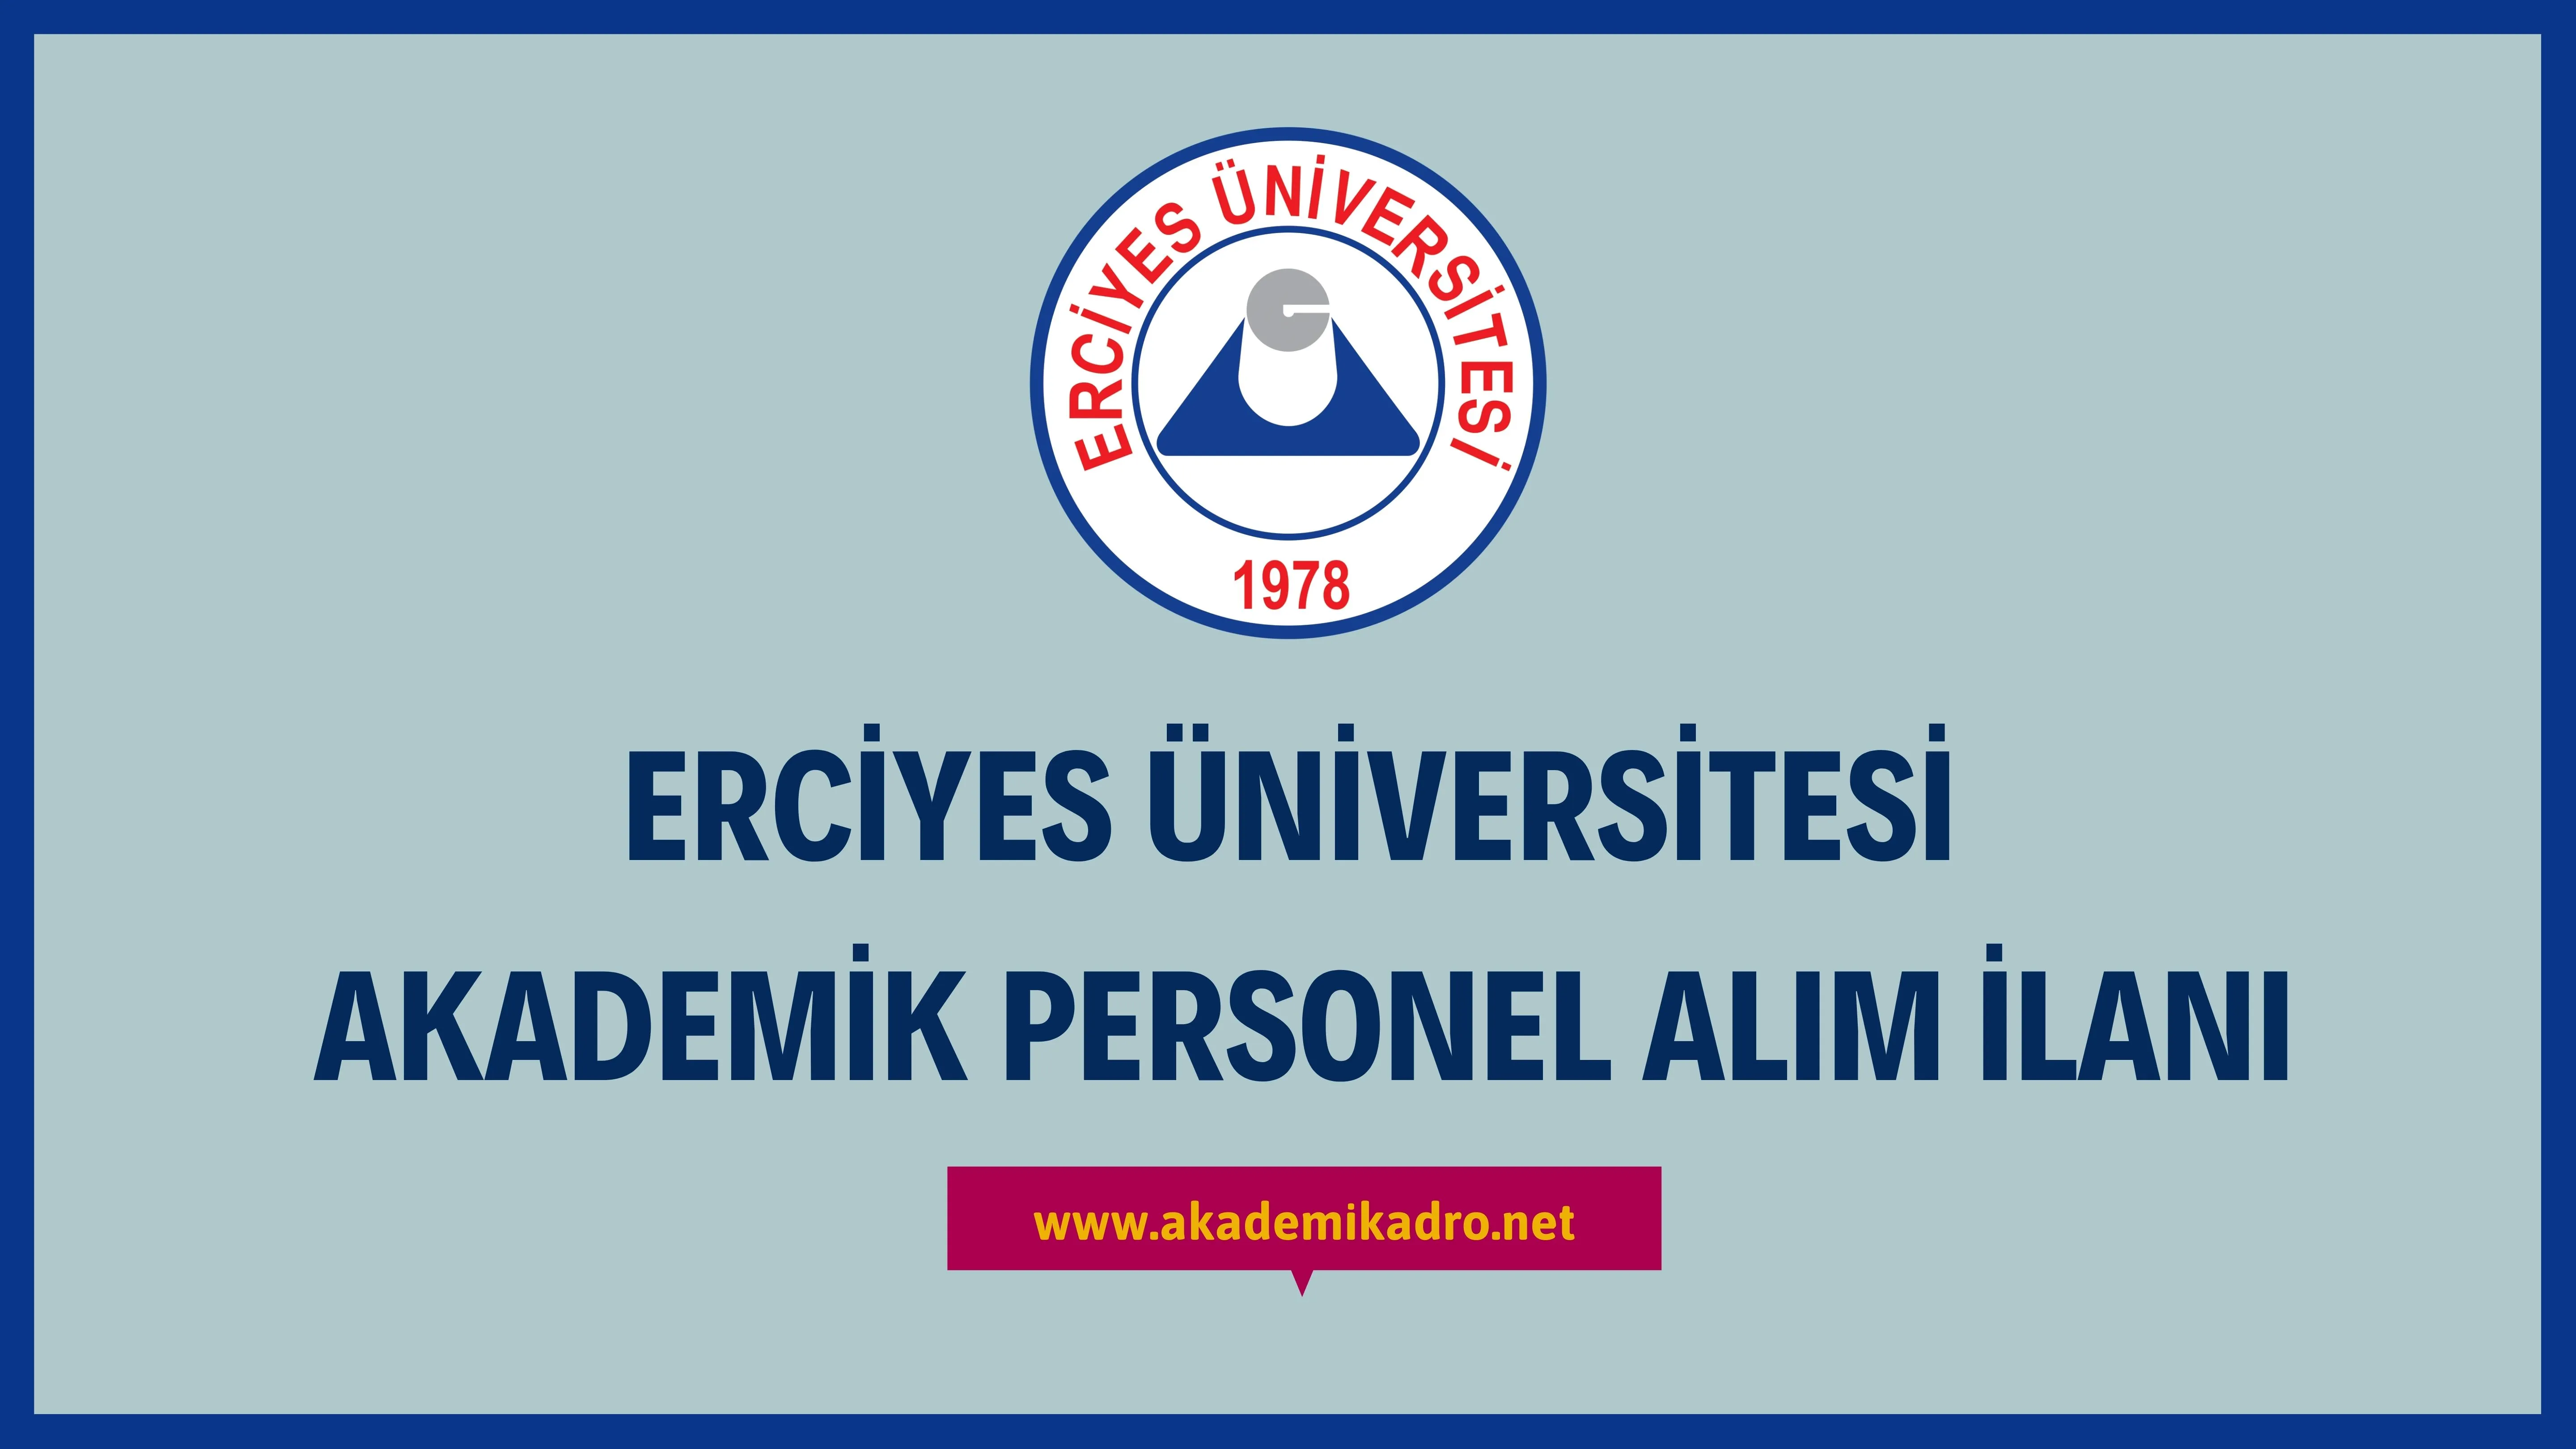 Erciyes Üniversitesi çeşitli branşlarda 19 akademik personel alacak.